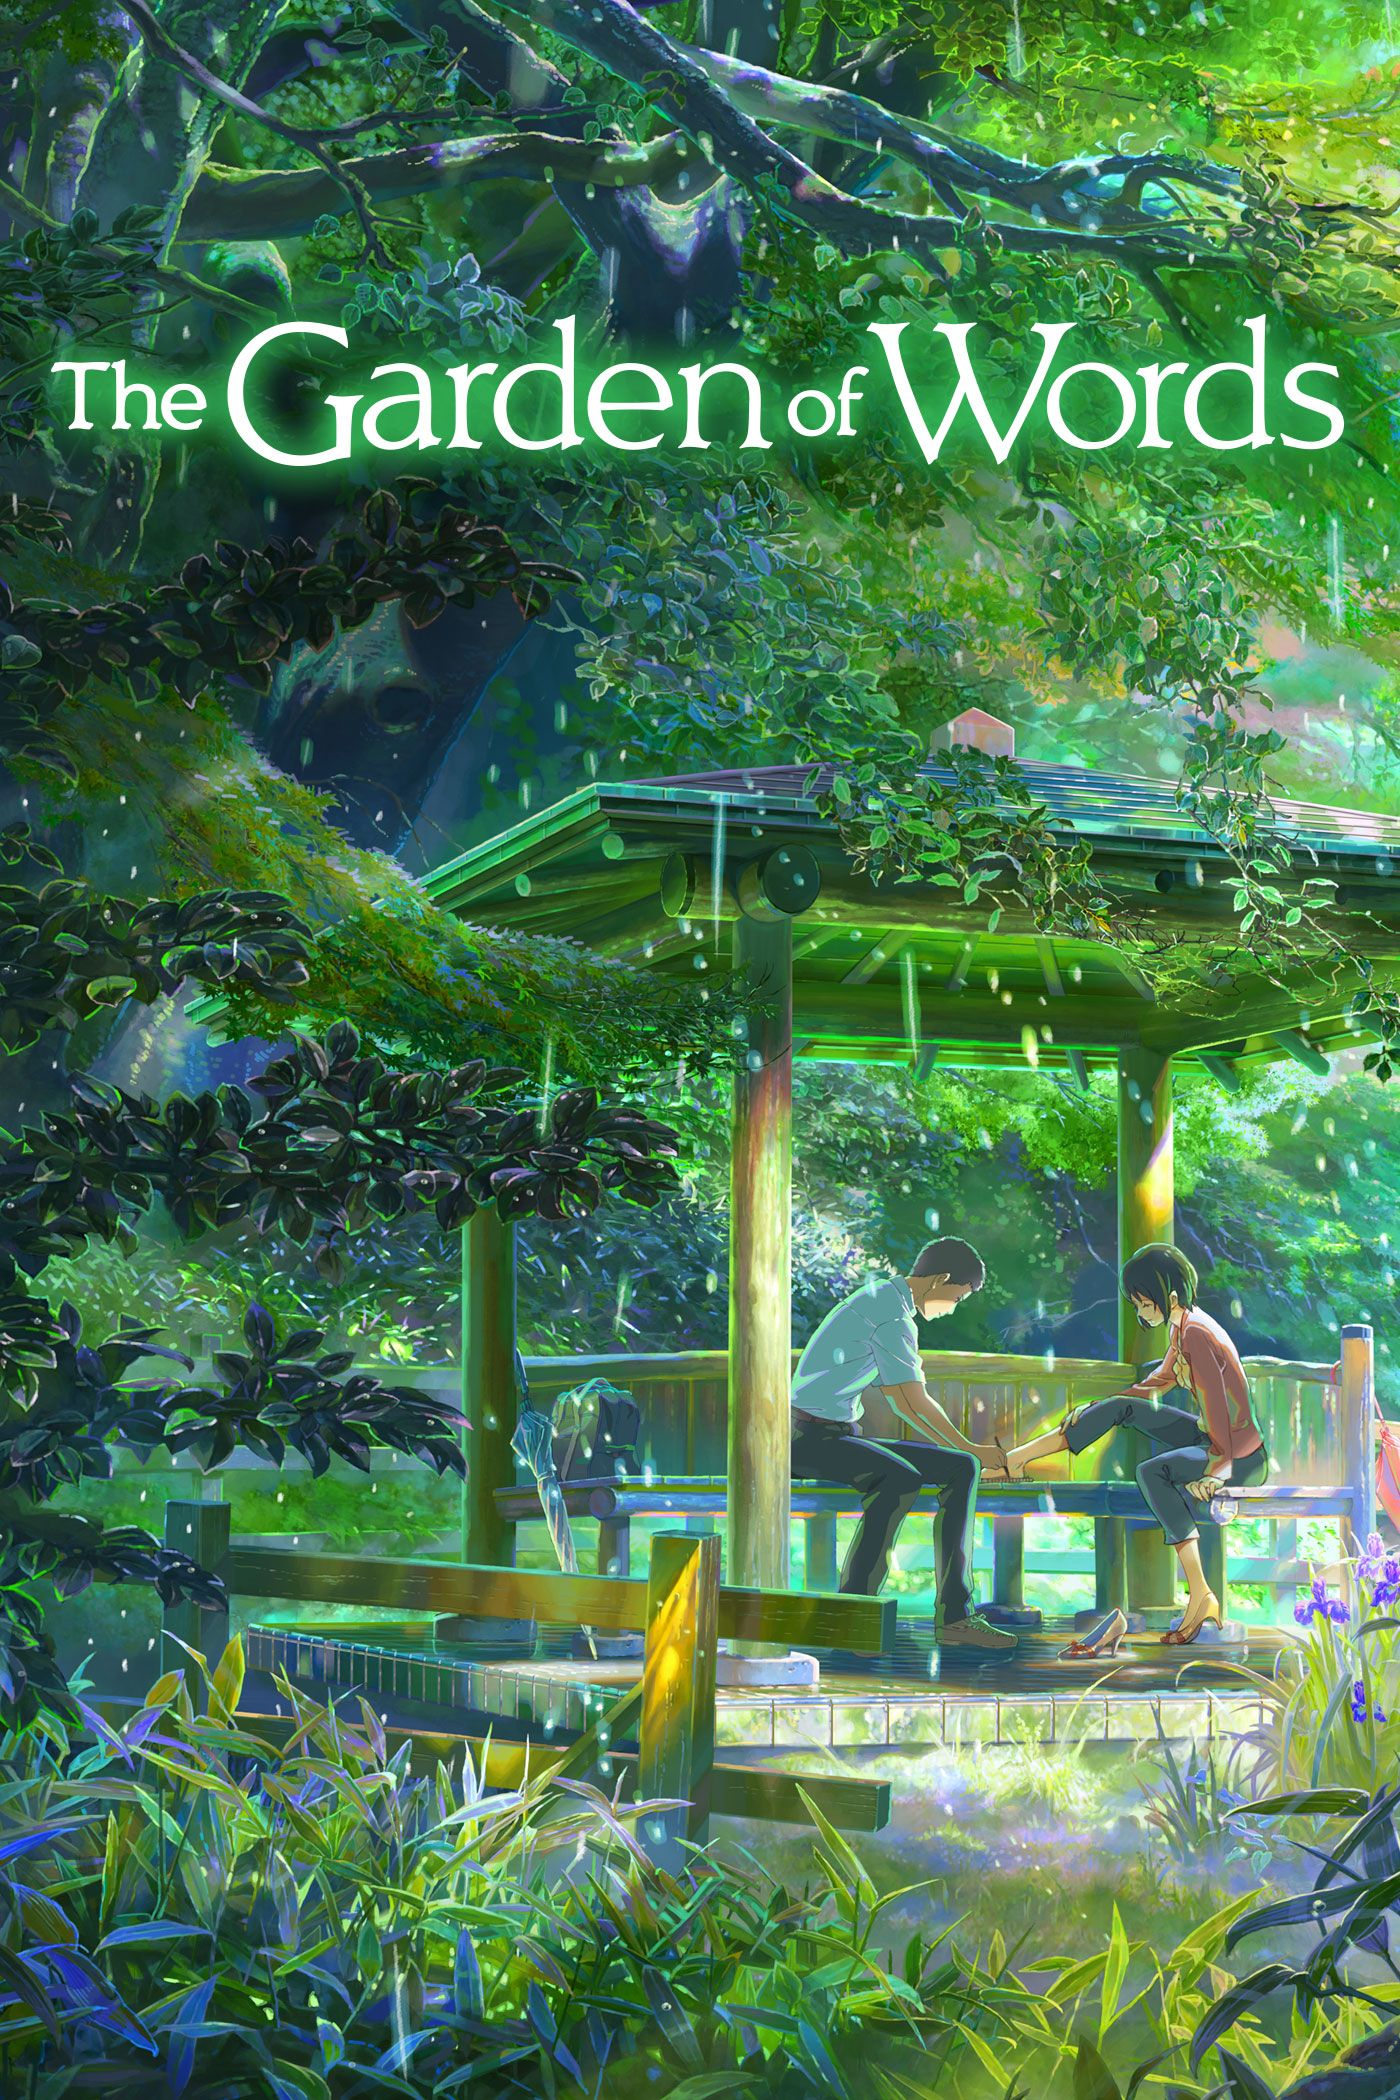 ดูหนังออนไลน์ฟรี The Garden of Words (2013) ยามสายฝนโปรยปราย หนังเต็มเรื่อง หนังมาสเตอร์ ดูหนังHD ดูหนังออนไลน์ ดูหนังใหม่